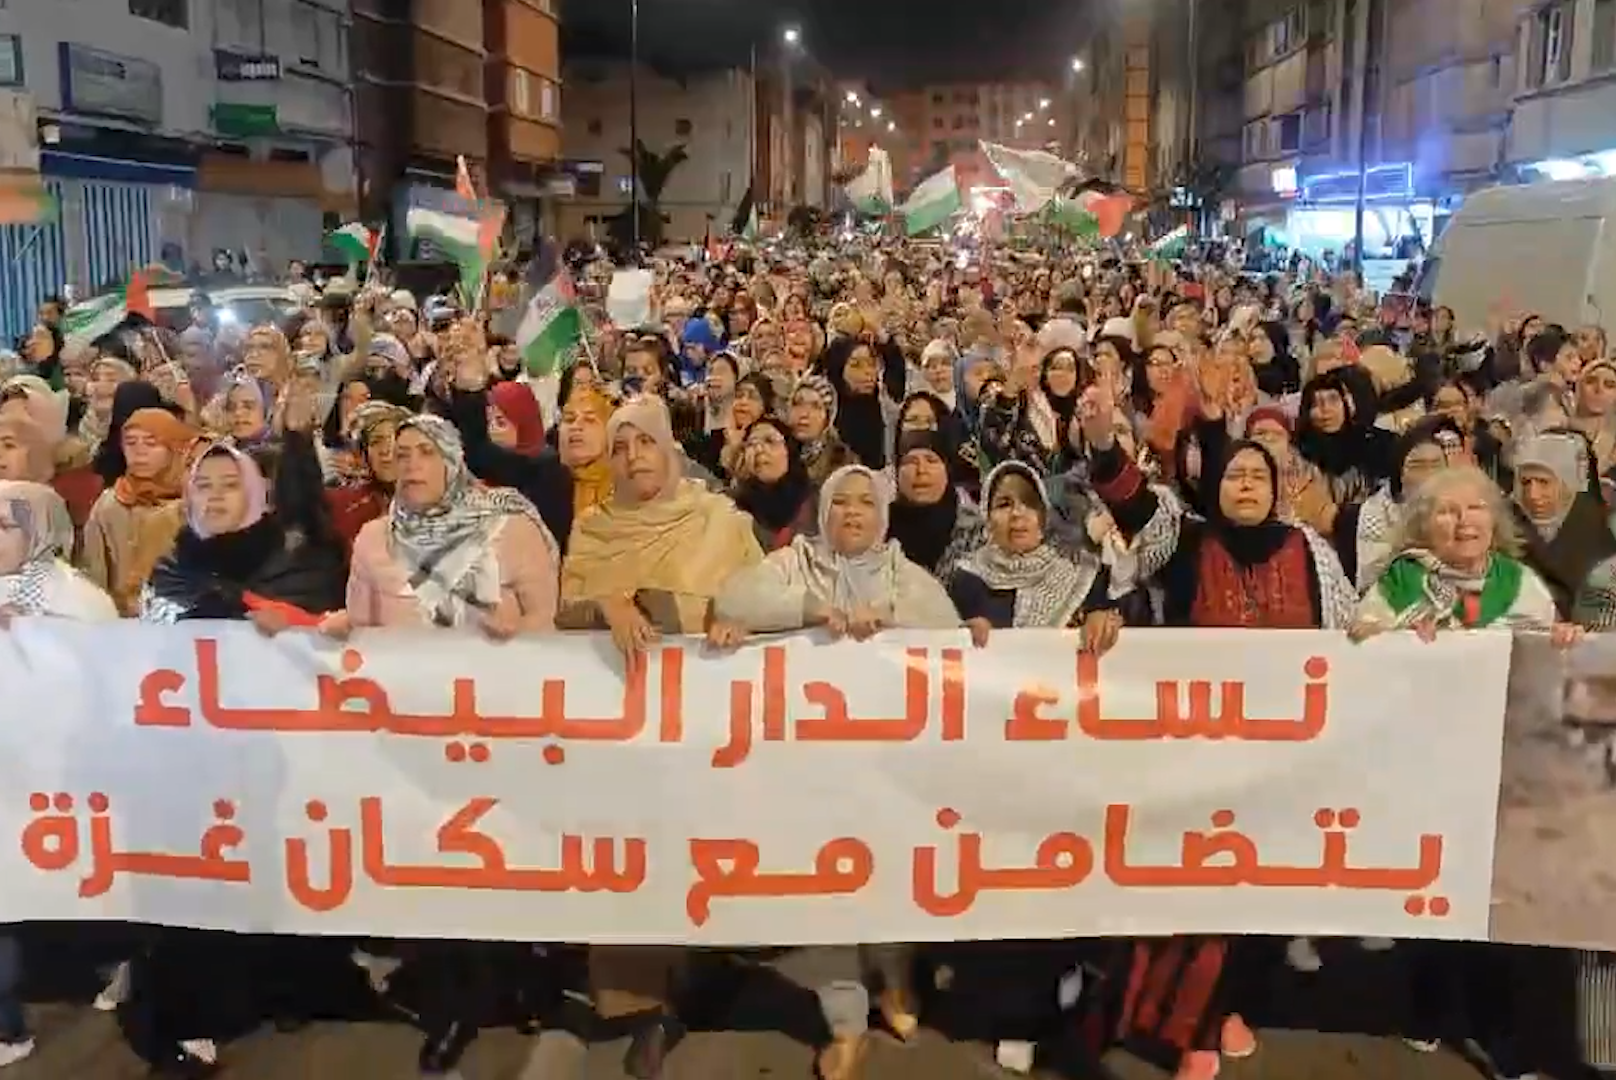 Hundreds protest for Gaza in Morocco